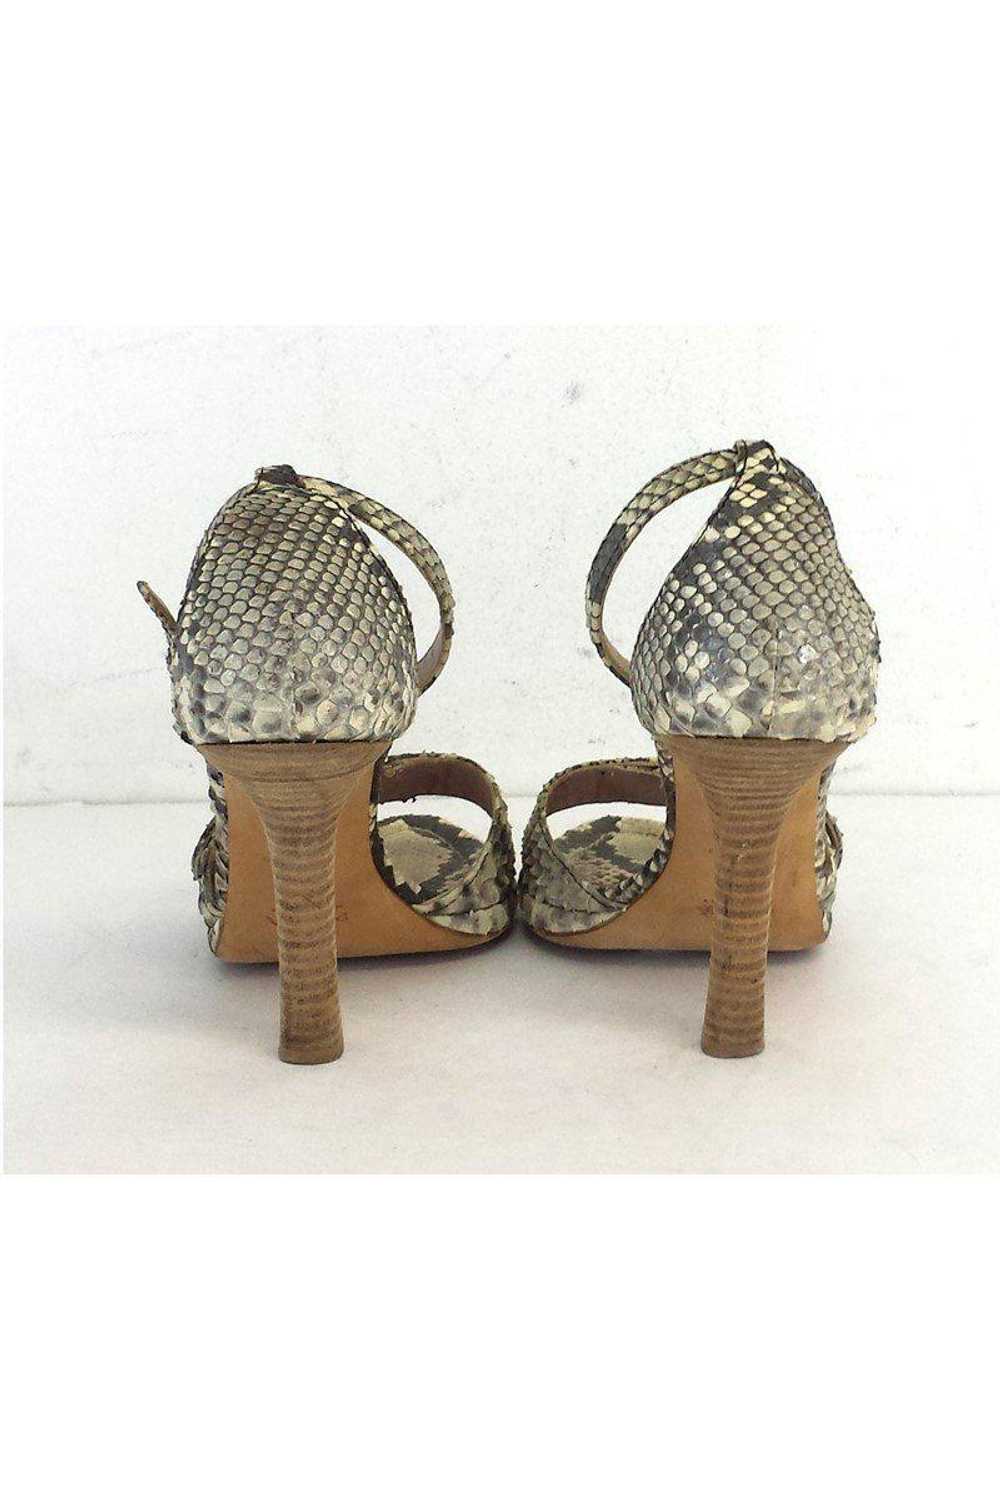 Prada - Beige & Grey Snakeskin Sandal Heels Sz 7 - image 4